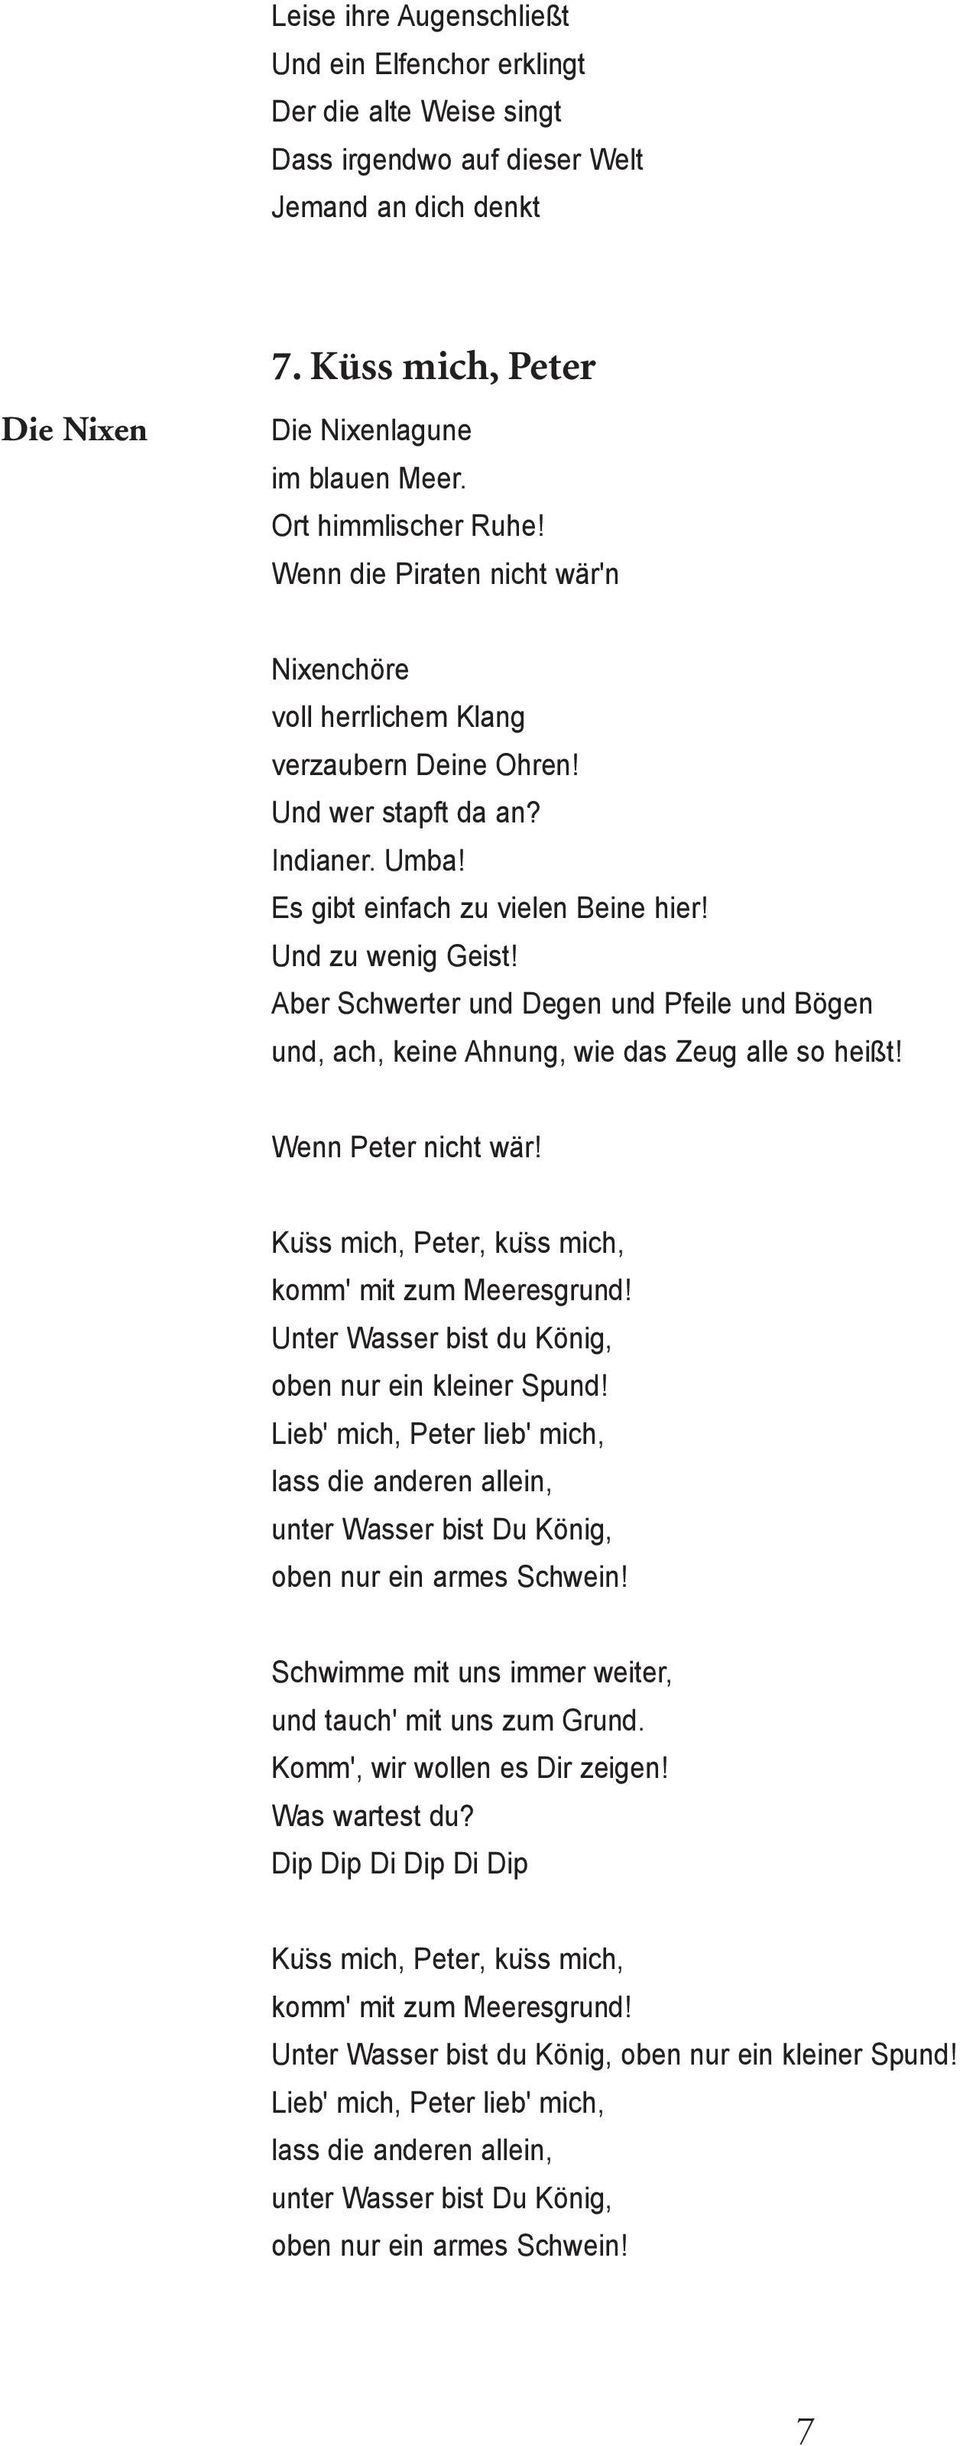 Rammstein Was In Den Lyrics Versteckt Ist Musik Dw 16 08 2019